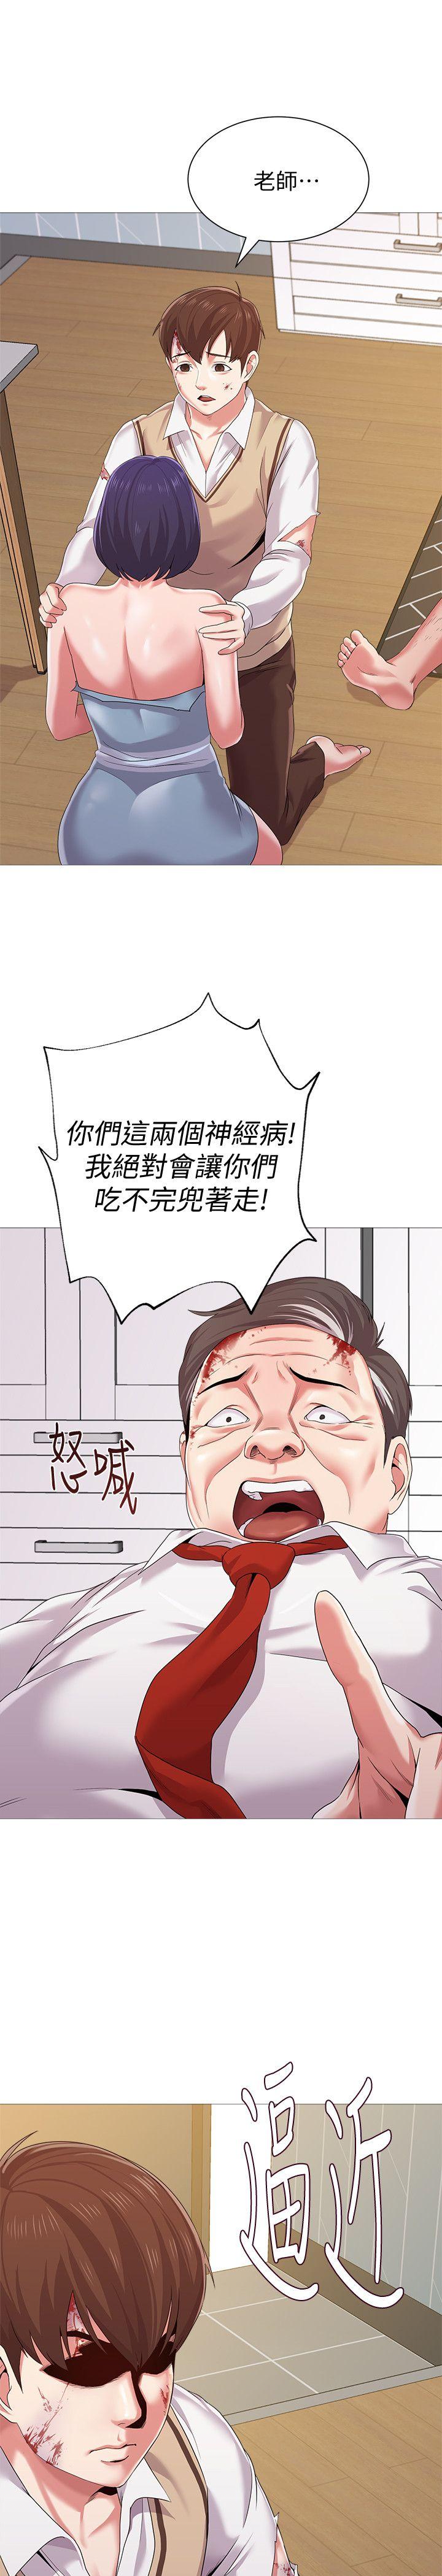 韩国污漫画 墮落教師 第22话-秀哲突如其来的告白 40